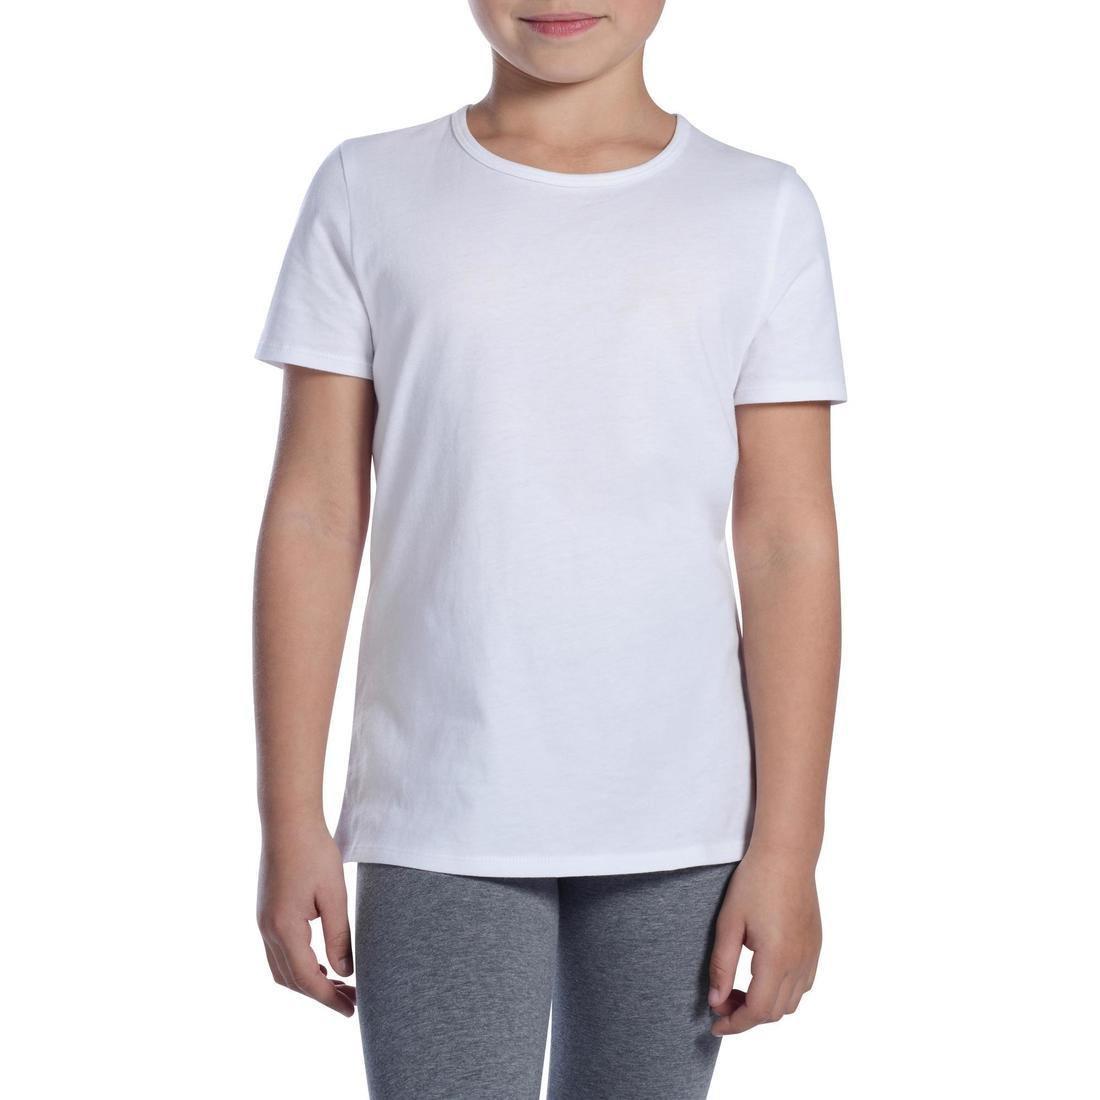 DOMYOS - Girls 100 Short-Sleeved Gym T-Shirt, White